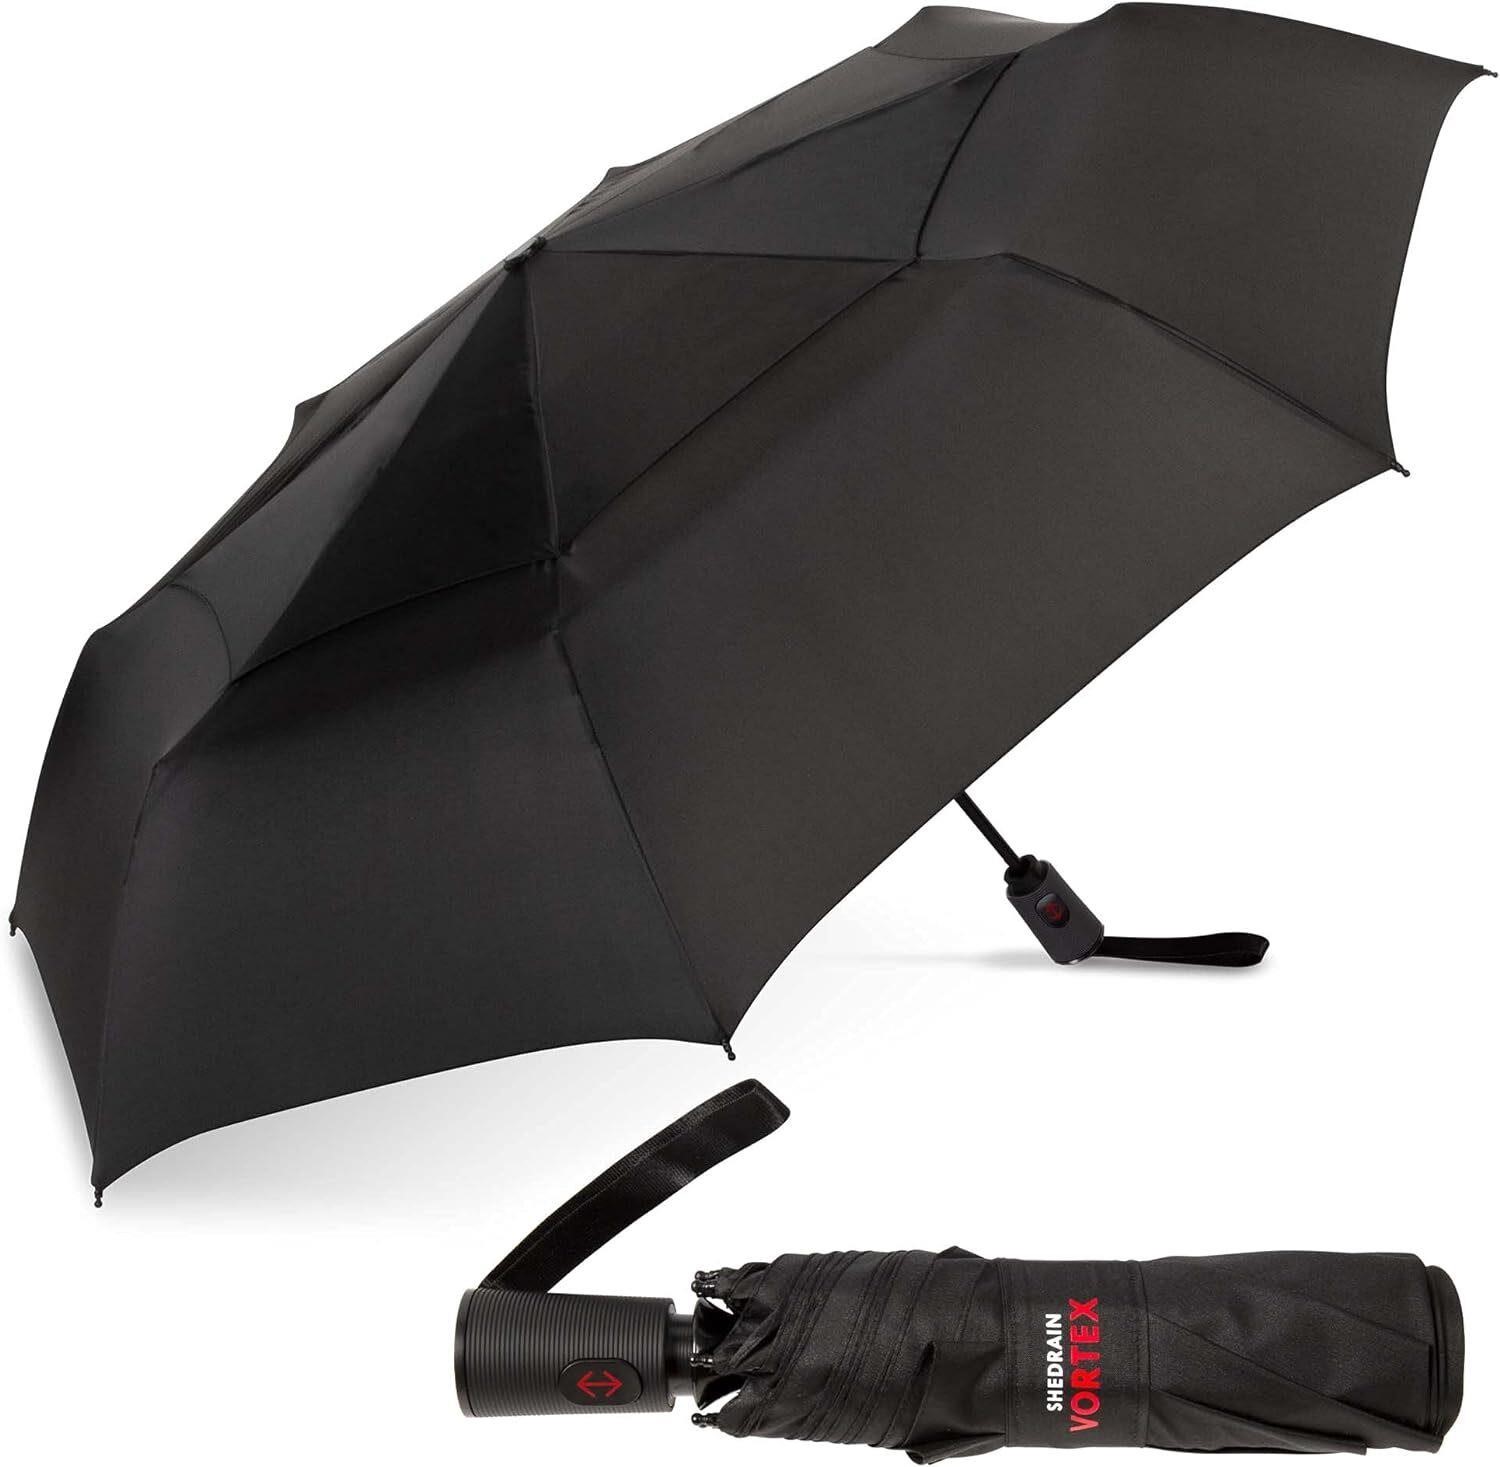 ShedRain Vortex Compact Windproof Travel Umbrella